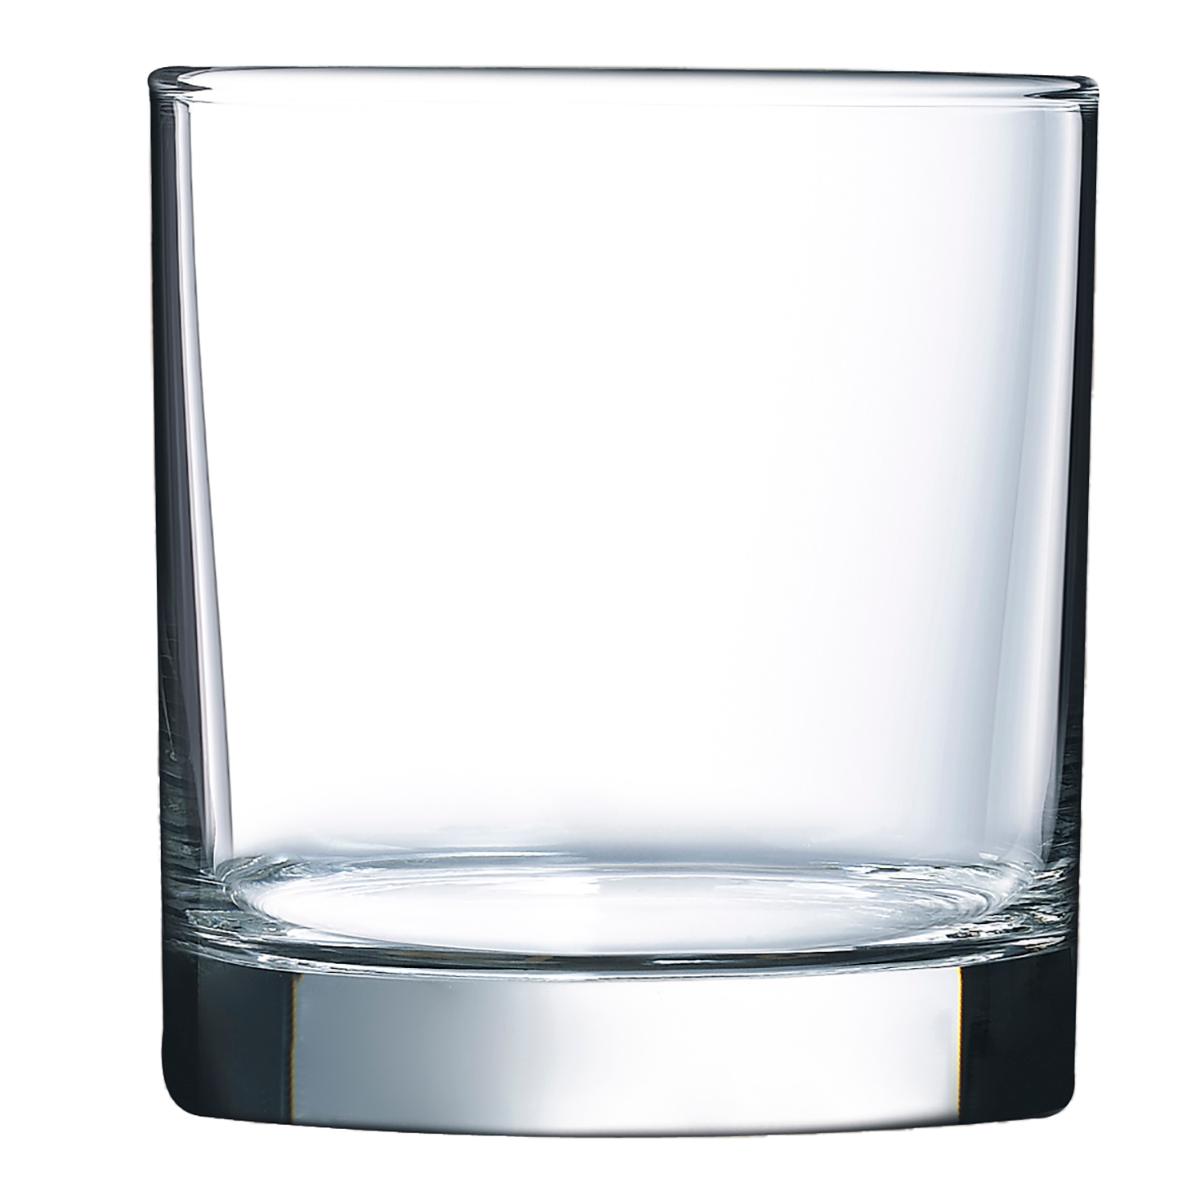 Arcoroc - ARCOROC ISLANDE Caja 6 Vasos Bajos Vidrio 38CL Transparente Brillo Fabricado en Francia , Facil de limpiar Reciclable , Ecológico , 100% higiénico , No poroso , Material 100% saludable , Larga duración No Apto Microondas , Apto Frigorífico 6 vasos bajos 3